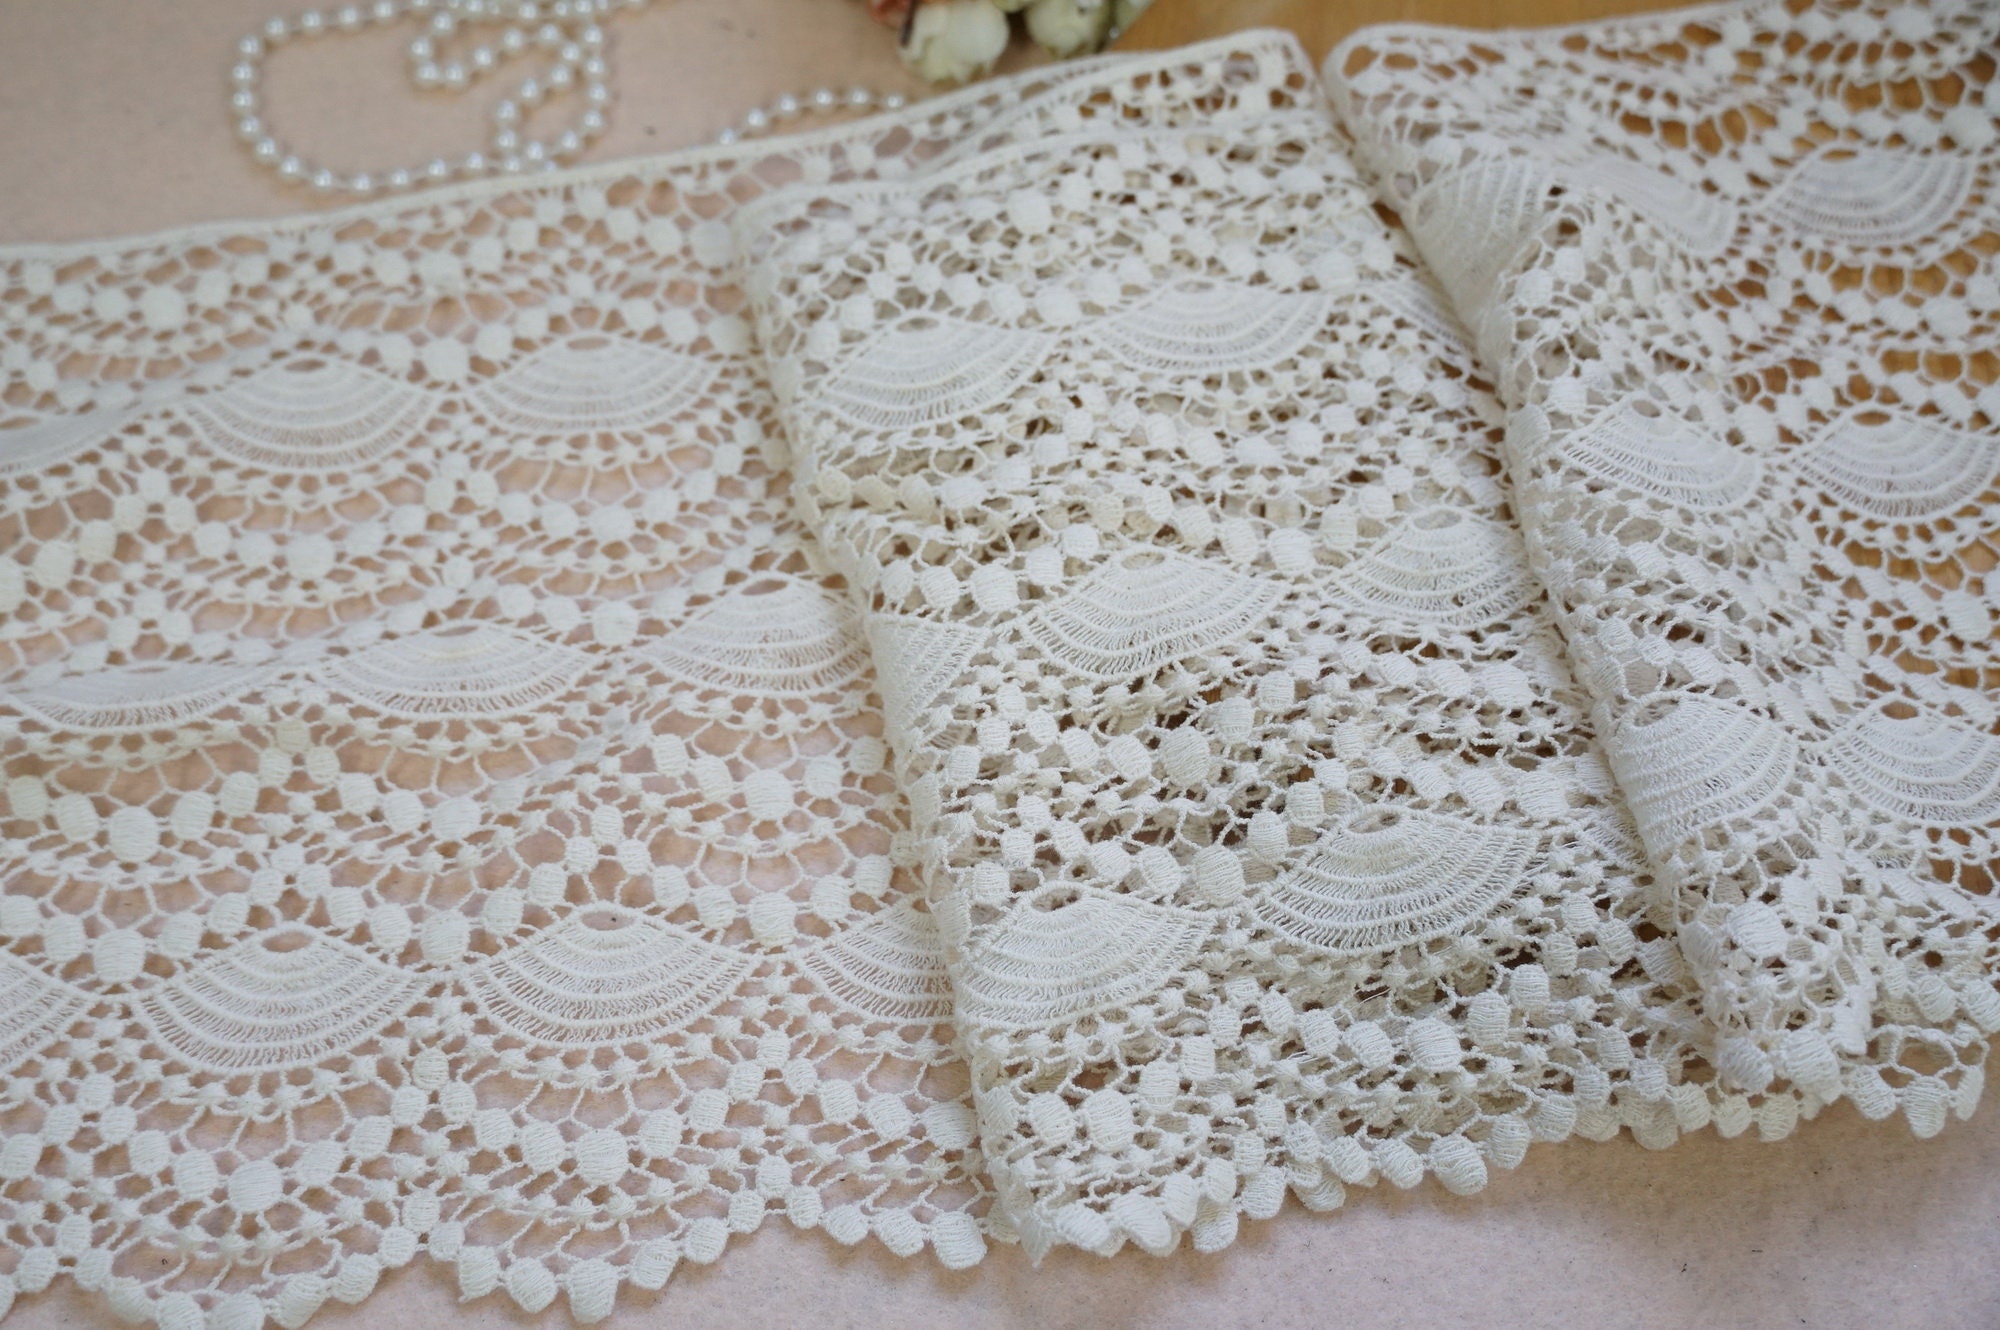 Antique Beige Lace Trim Vintage Crochet Cotton Lace Trim - Etsy